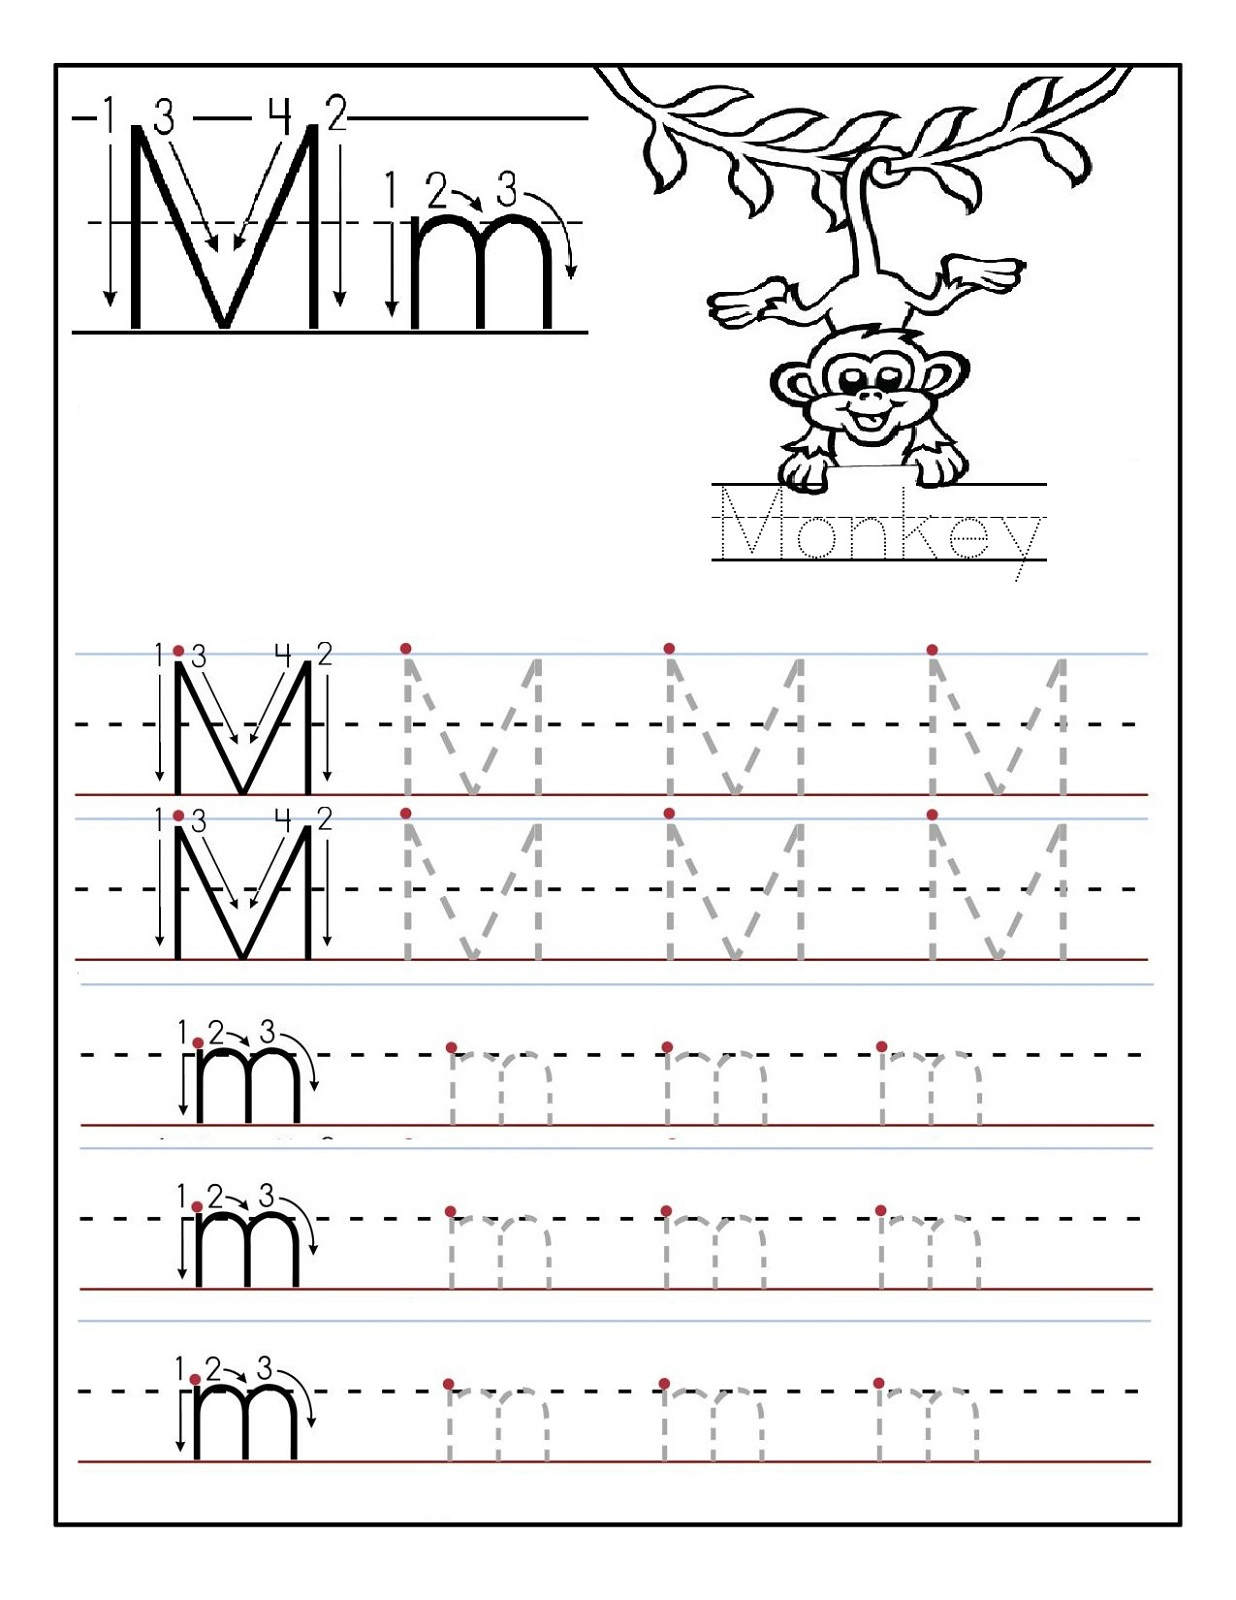 Letter M Worksheets | Activity Shelter within Letter M Worksheets For Kindergarten Free